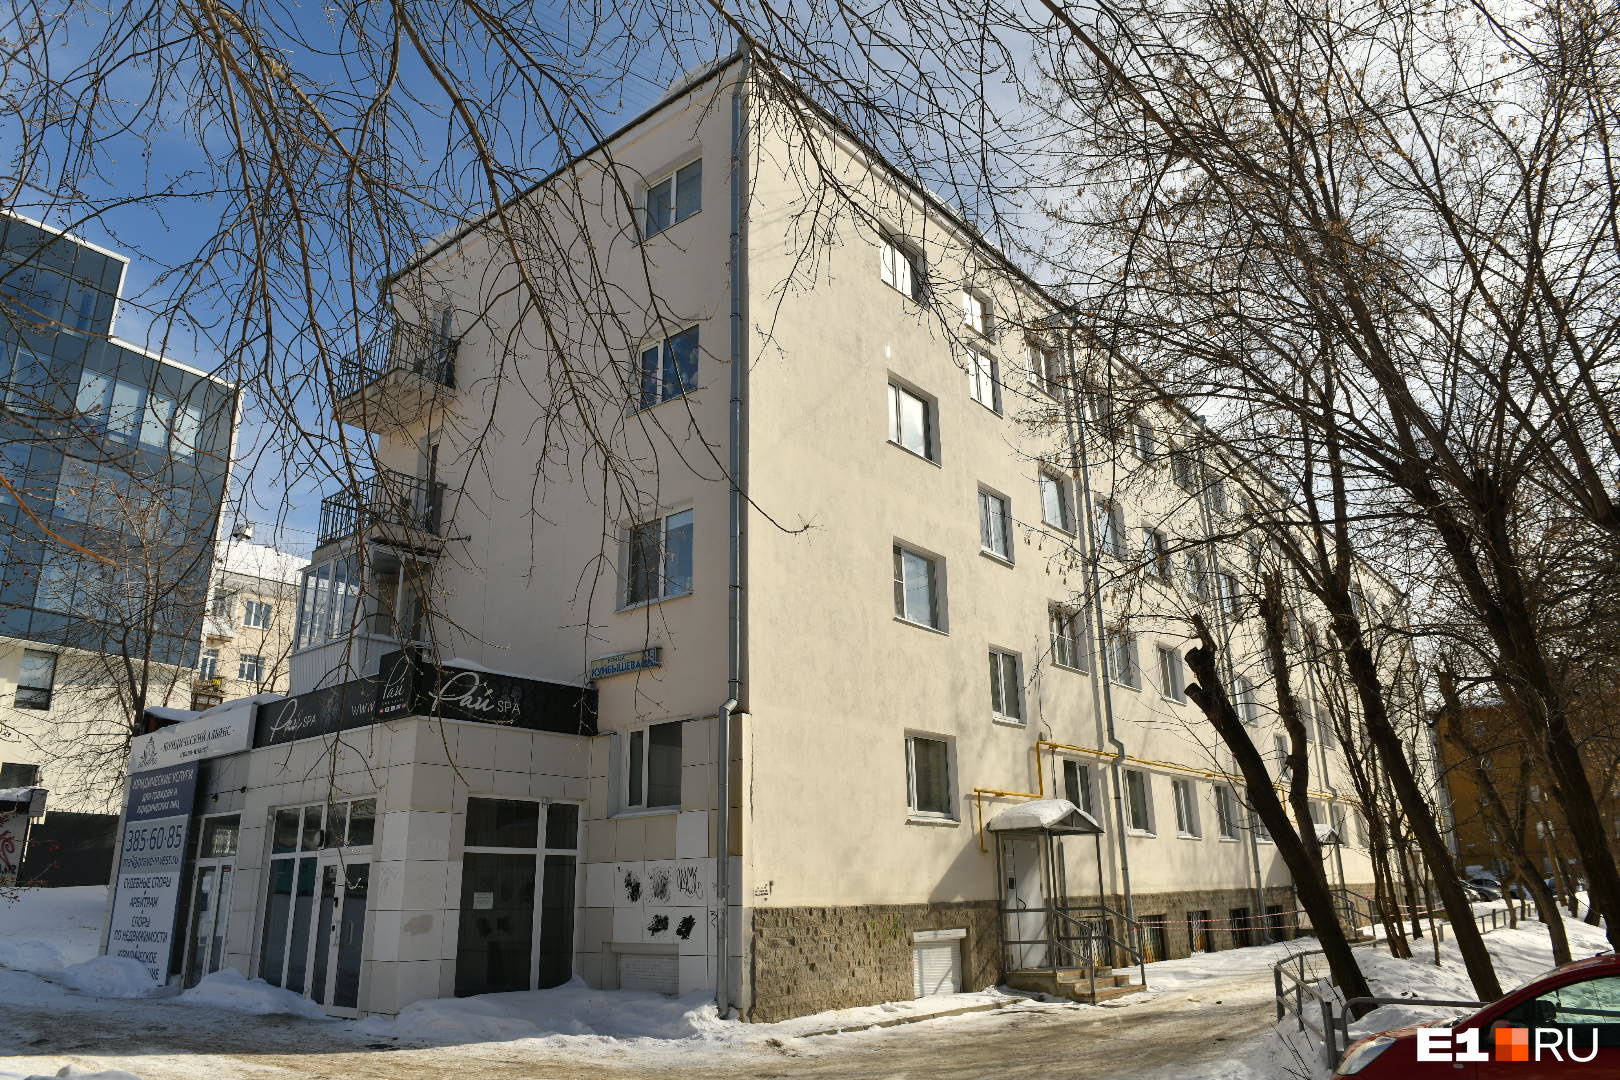 Массажный салон работает в цокольном этаже жилого дома на улице Куйбышева